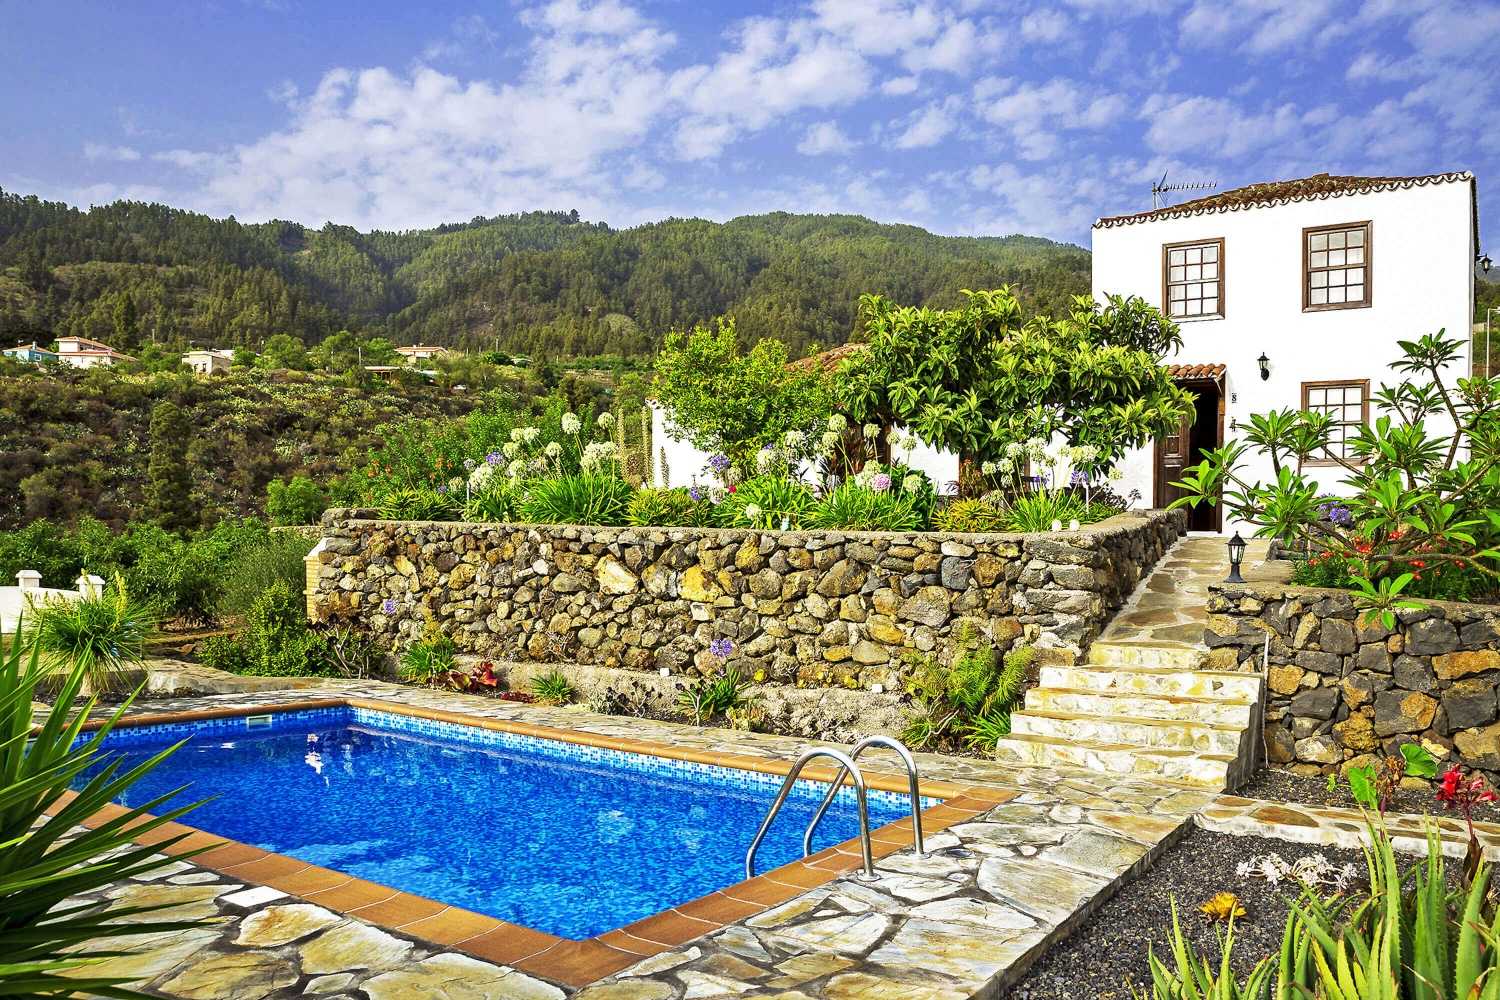 Charmantes Landhaus mit spektakulärer Aussicht auf einem großen Anwesen mit Gärten, Obstbäumen und privatem Pool